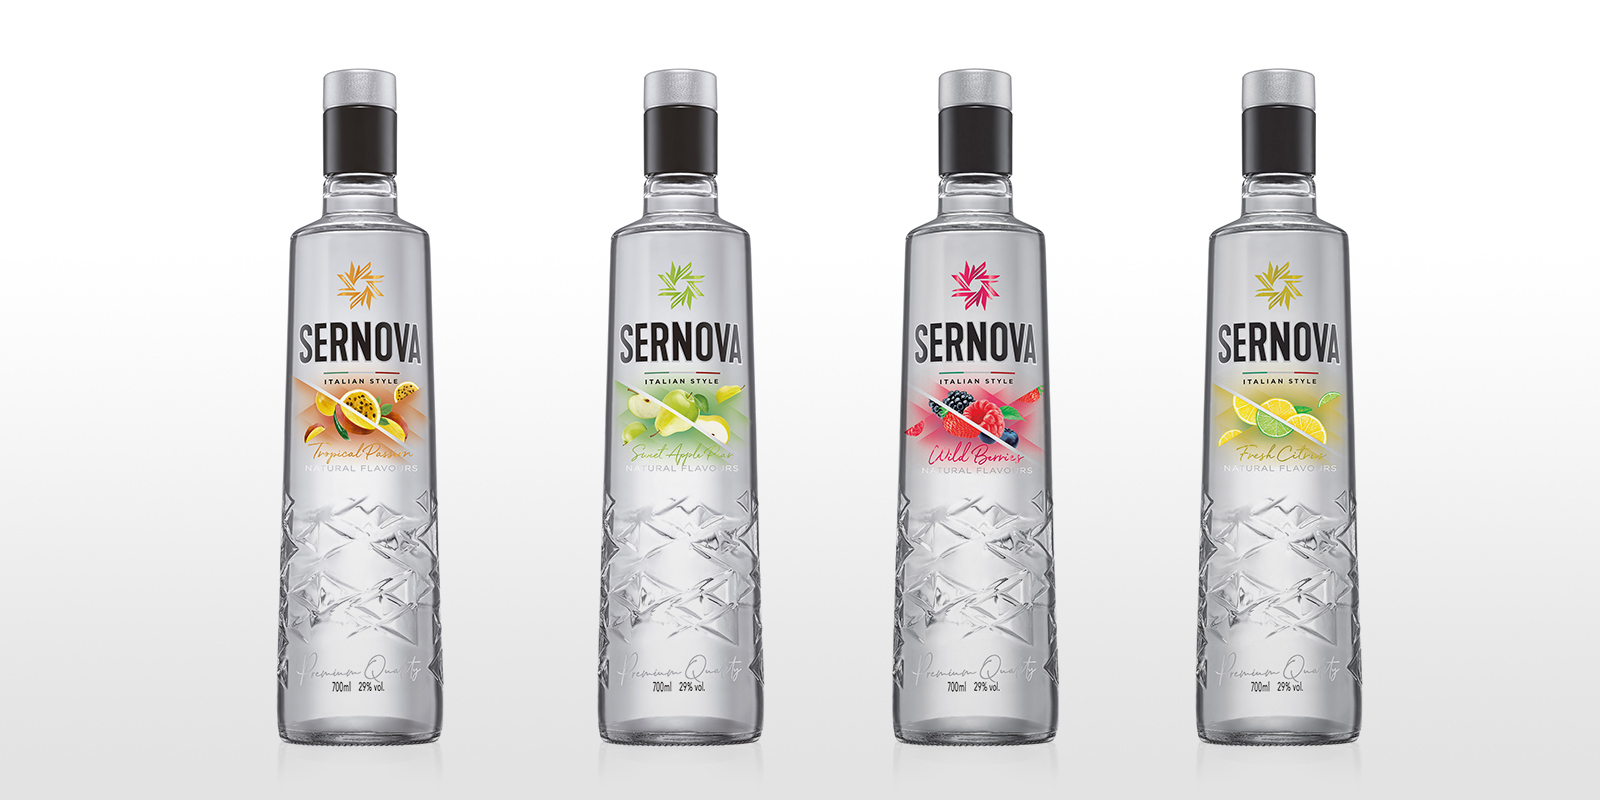 Tridimage diseño extensión de línea vodka Sernova saborizado